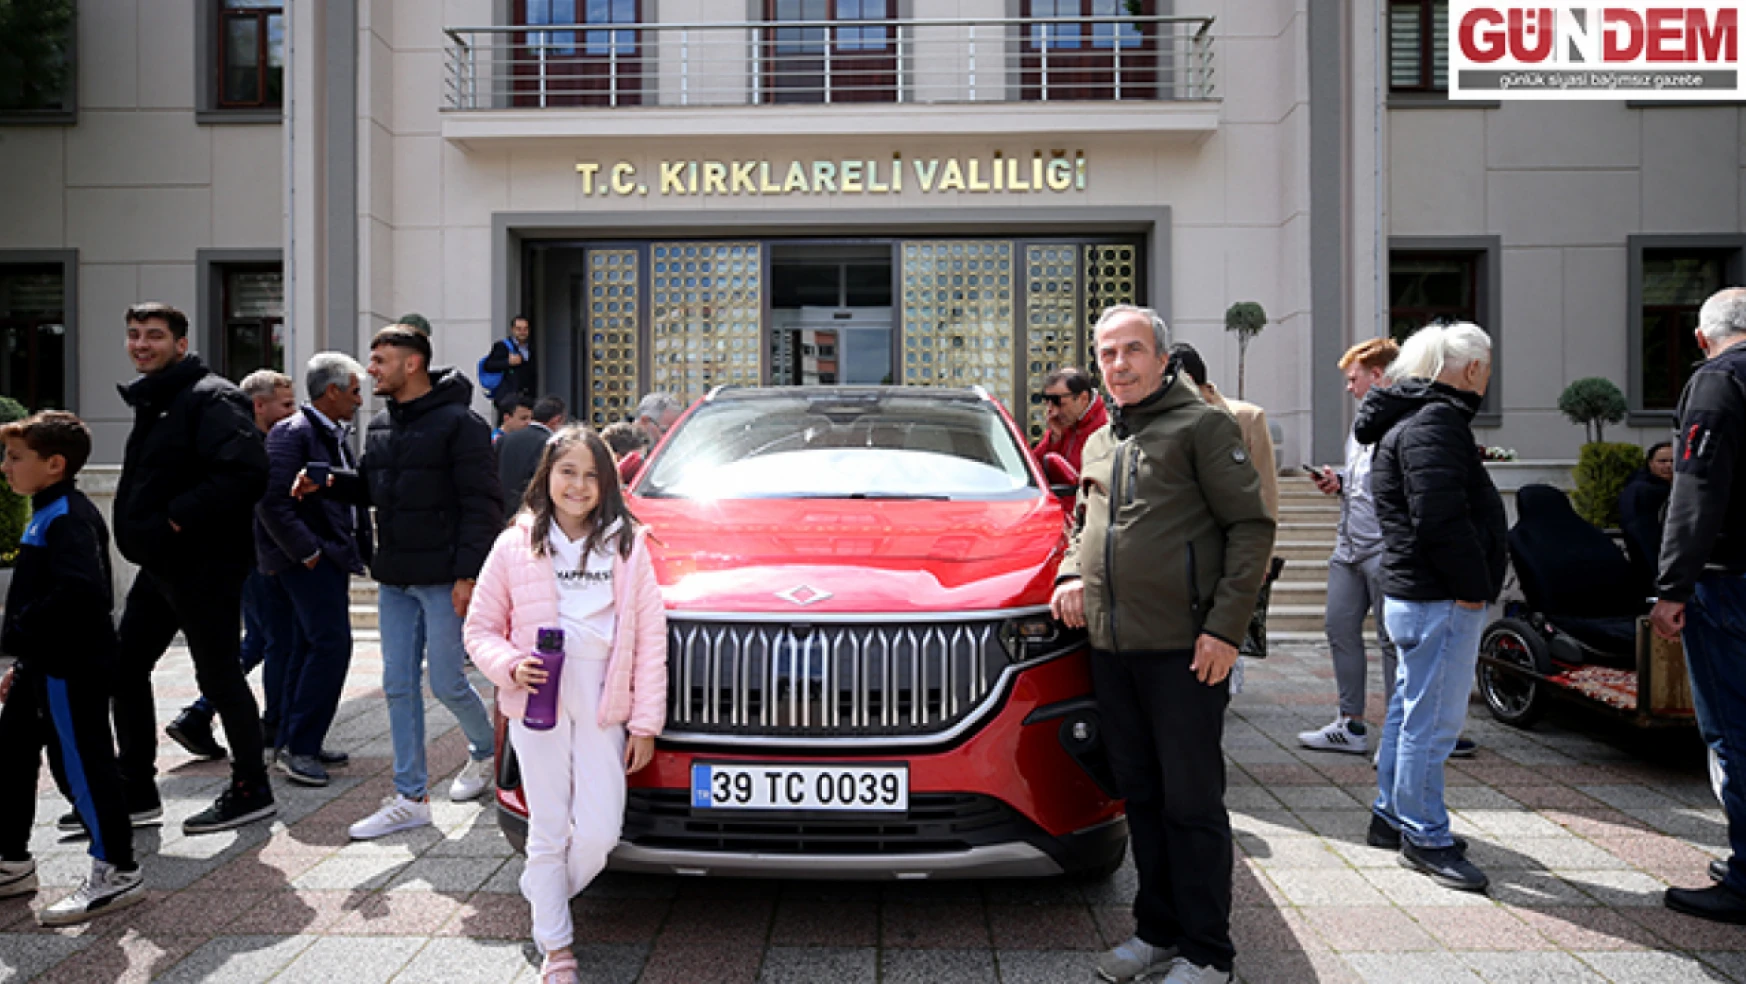 Türkiye'nin yerli otomobili Togg, Kırklareli'nde tanıtıldı